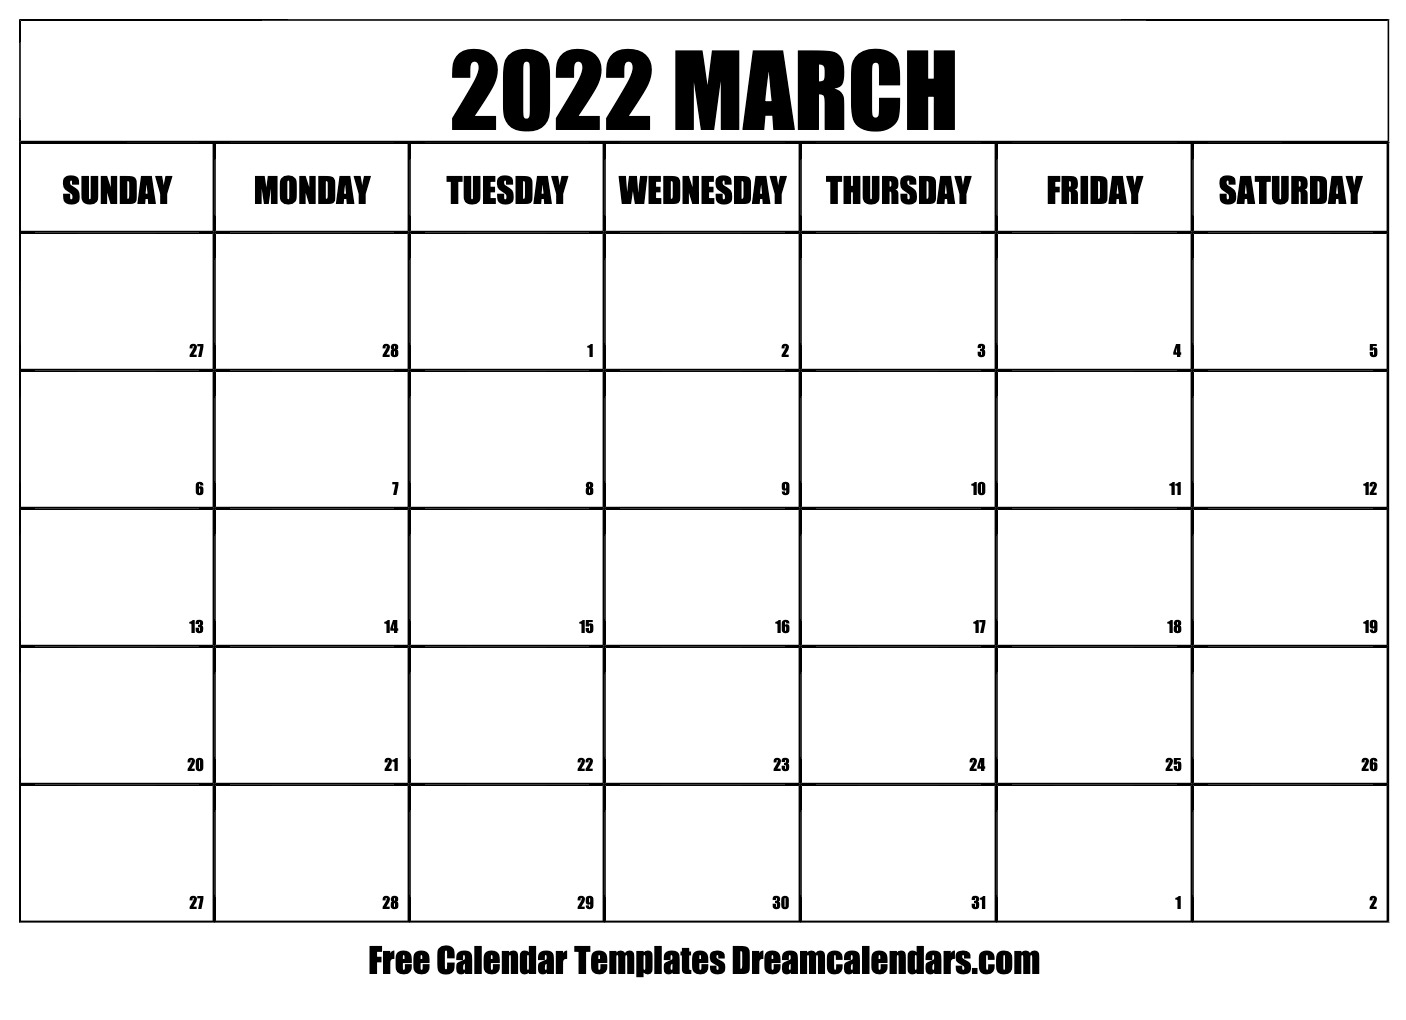 Get Lunar Calendar 2022 March